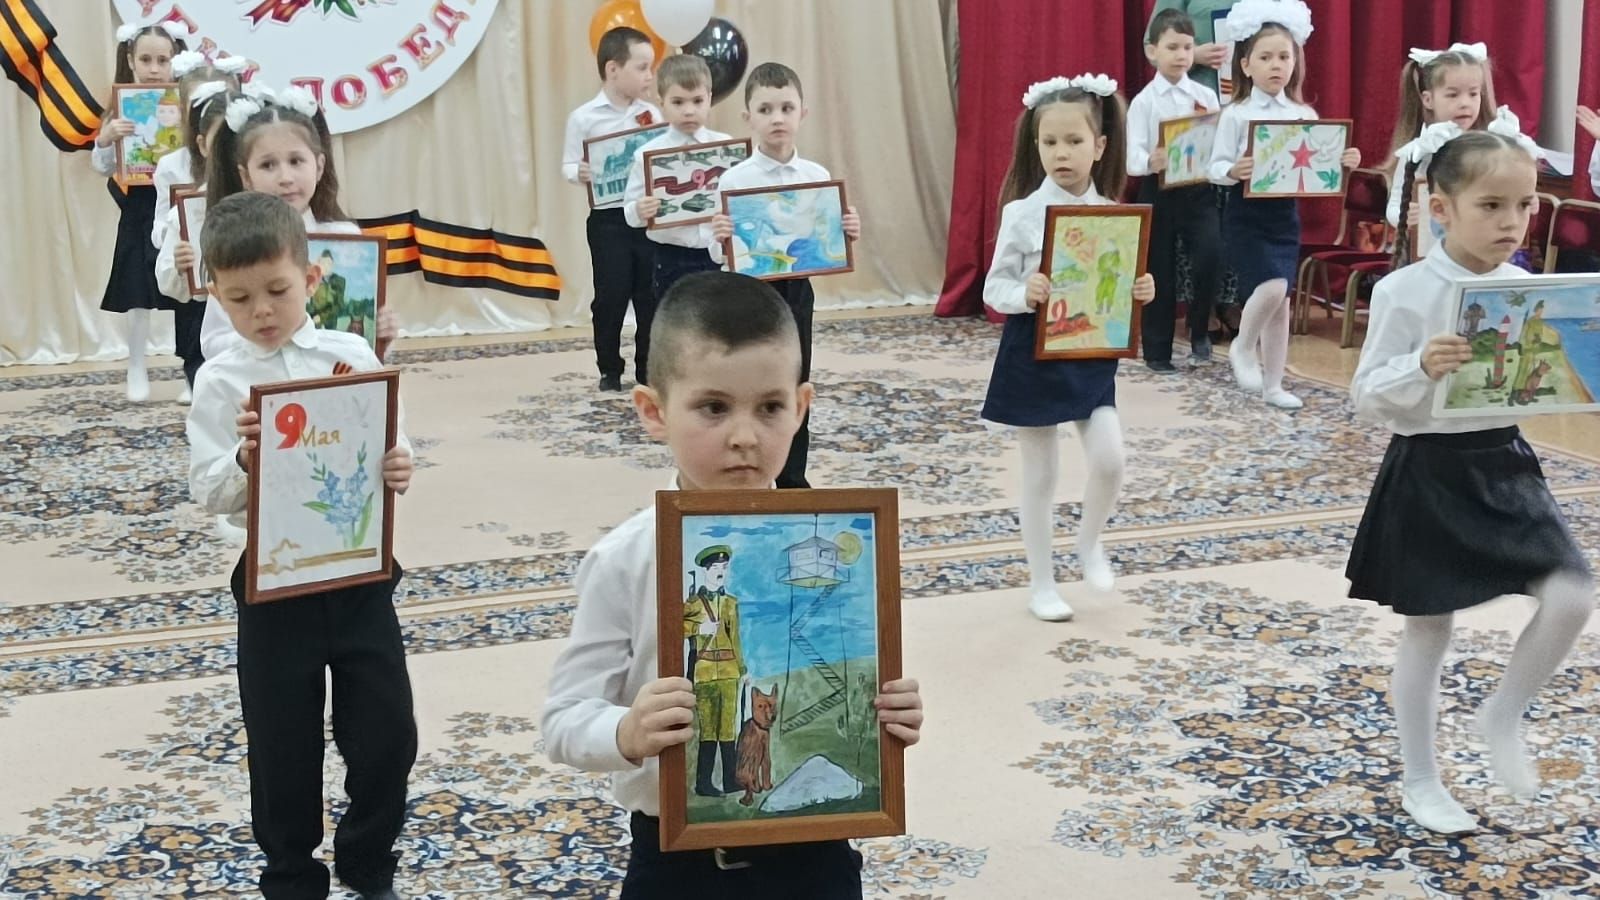 Сегодня в детском саду «Бэлэкэч» прошел концерт-фестиваль военной песни, приуроченный к празднику 9 мая